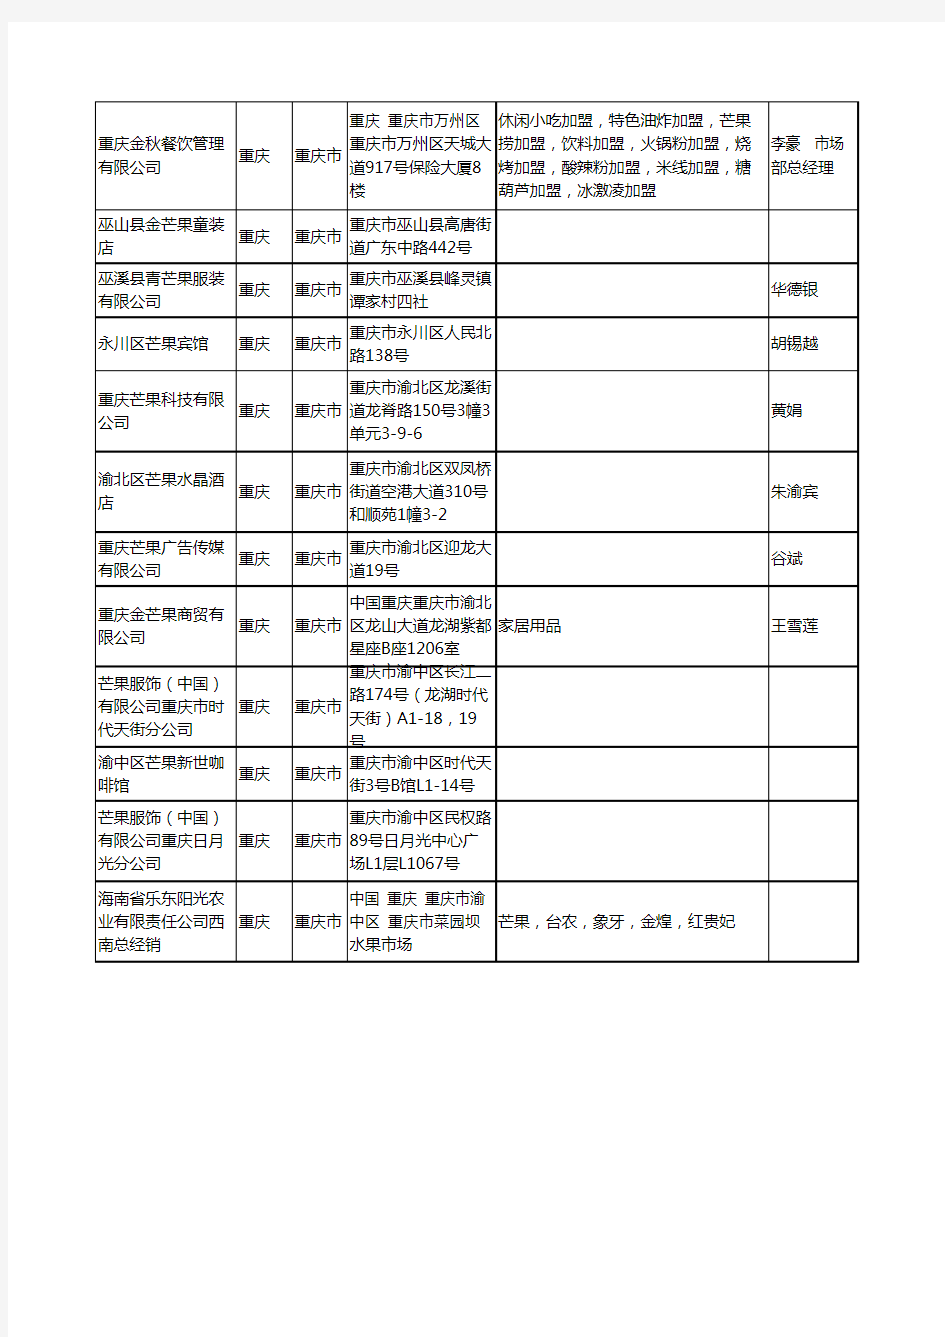 2020新版重庆市芒果工商企业公司名录名单黄页大全26家